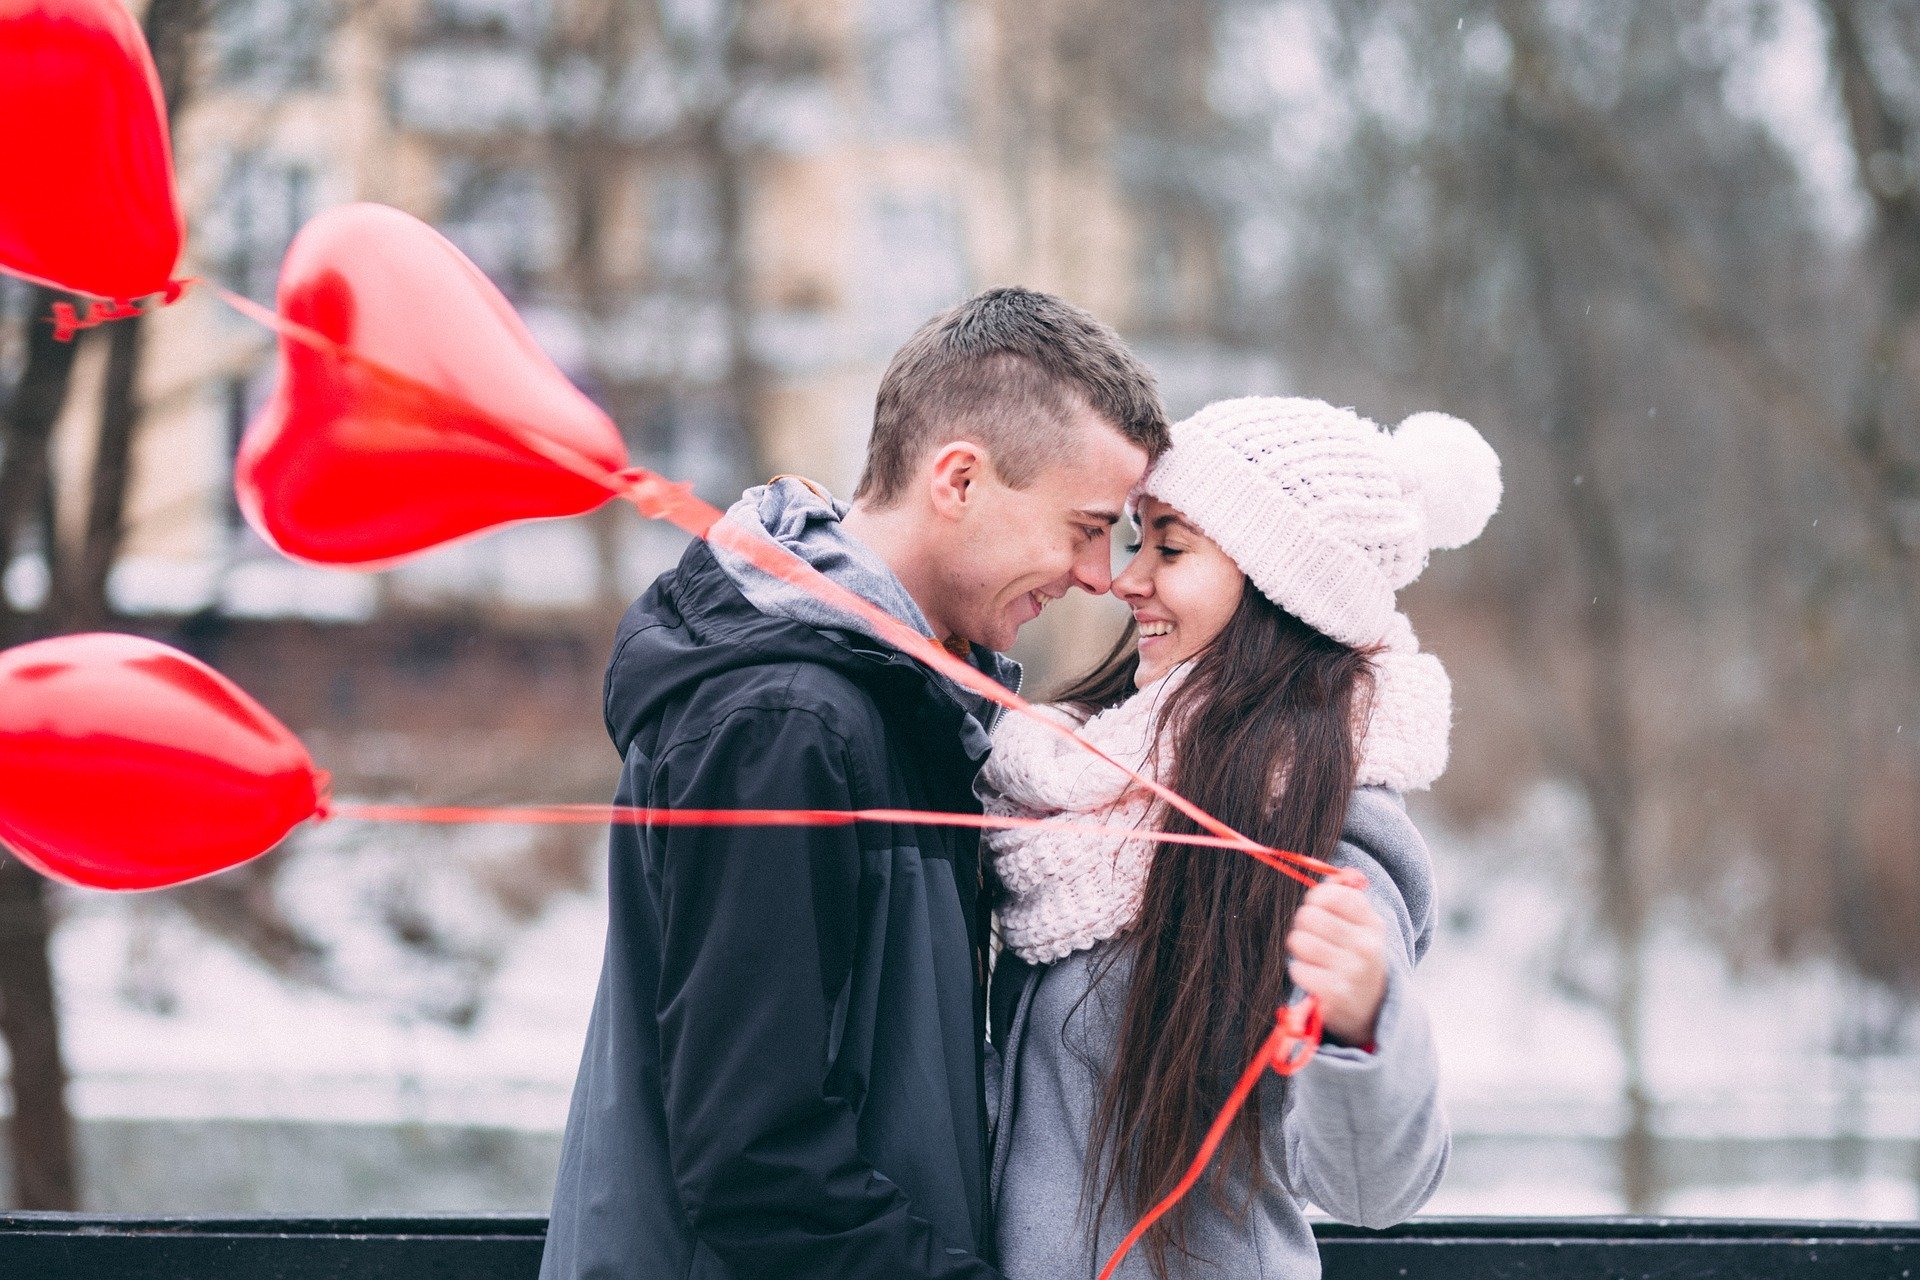 Homem e mulher abraçados sorrindo, e mulher segurando balões em formato de coração.